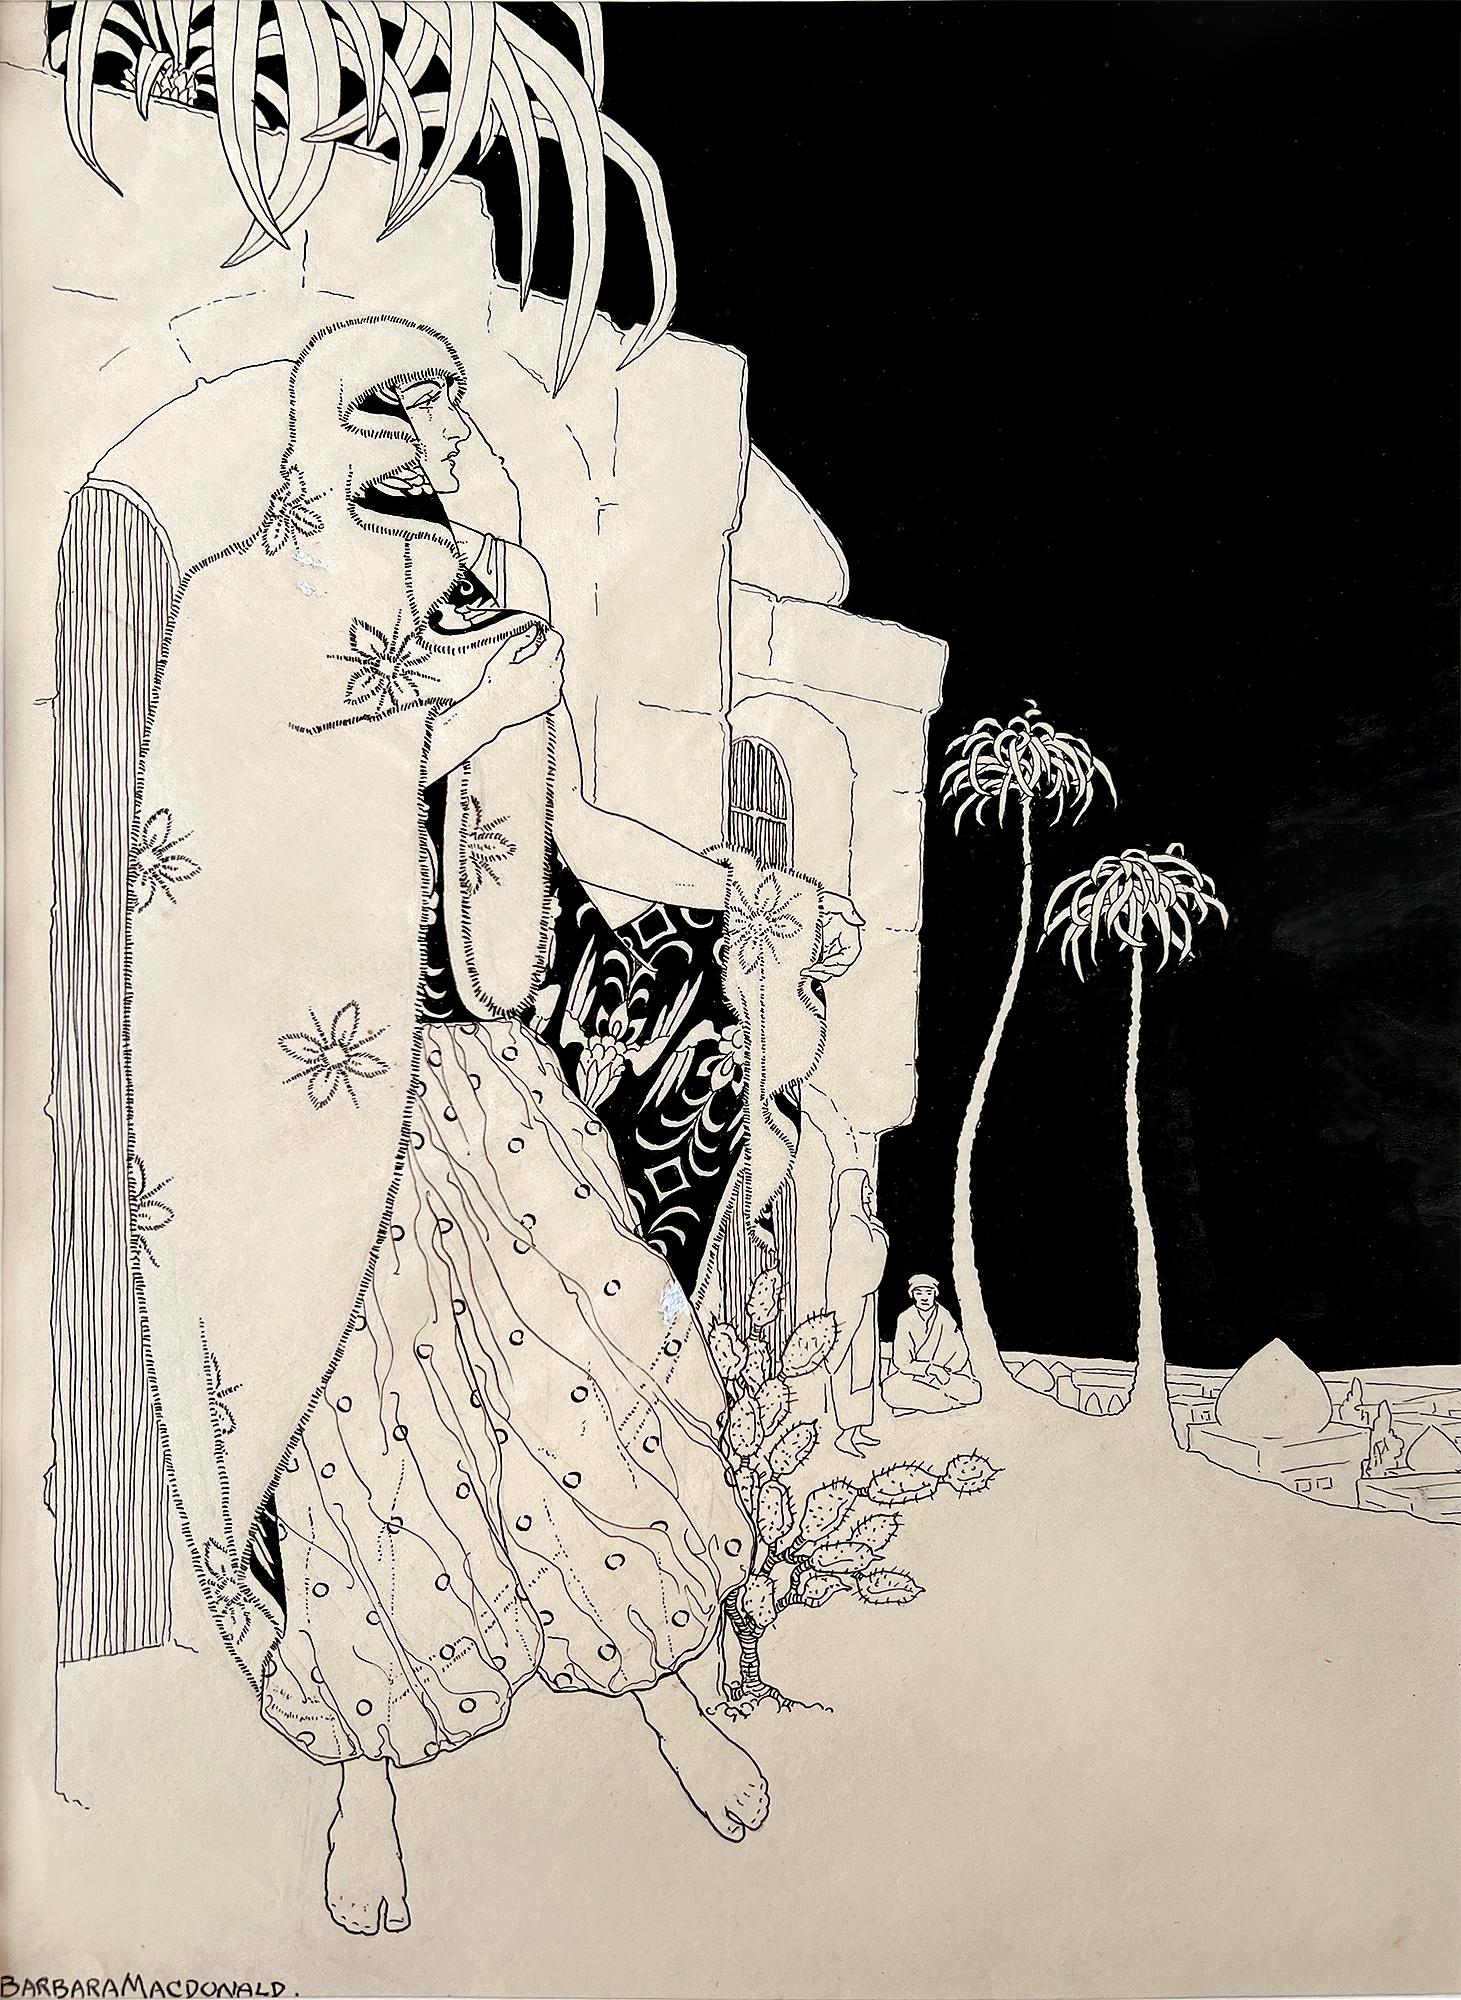 Barbara Macdonald  Figurative Art – Prinzessin Herminie und der Wandteppich Prinz – weibliche Illustratorin